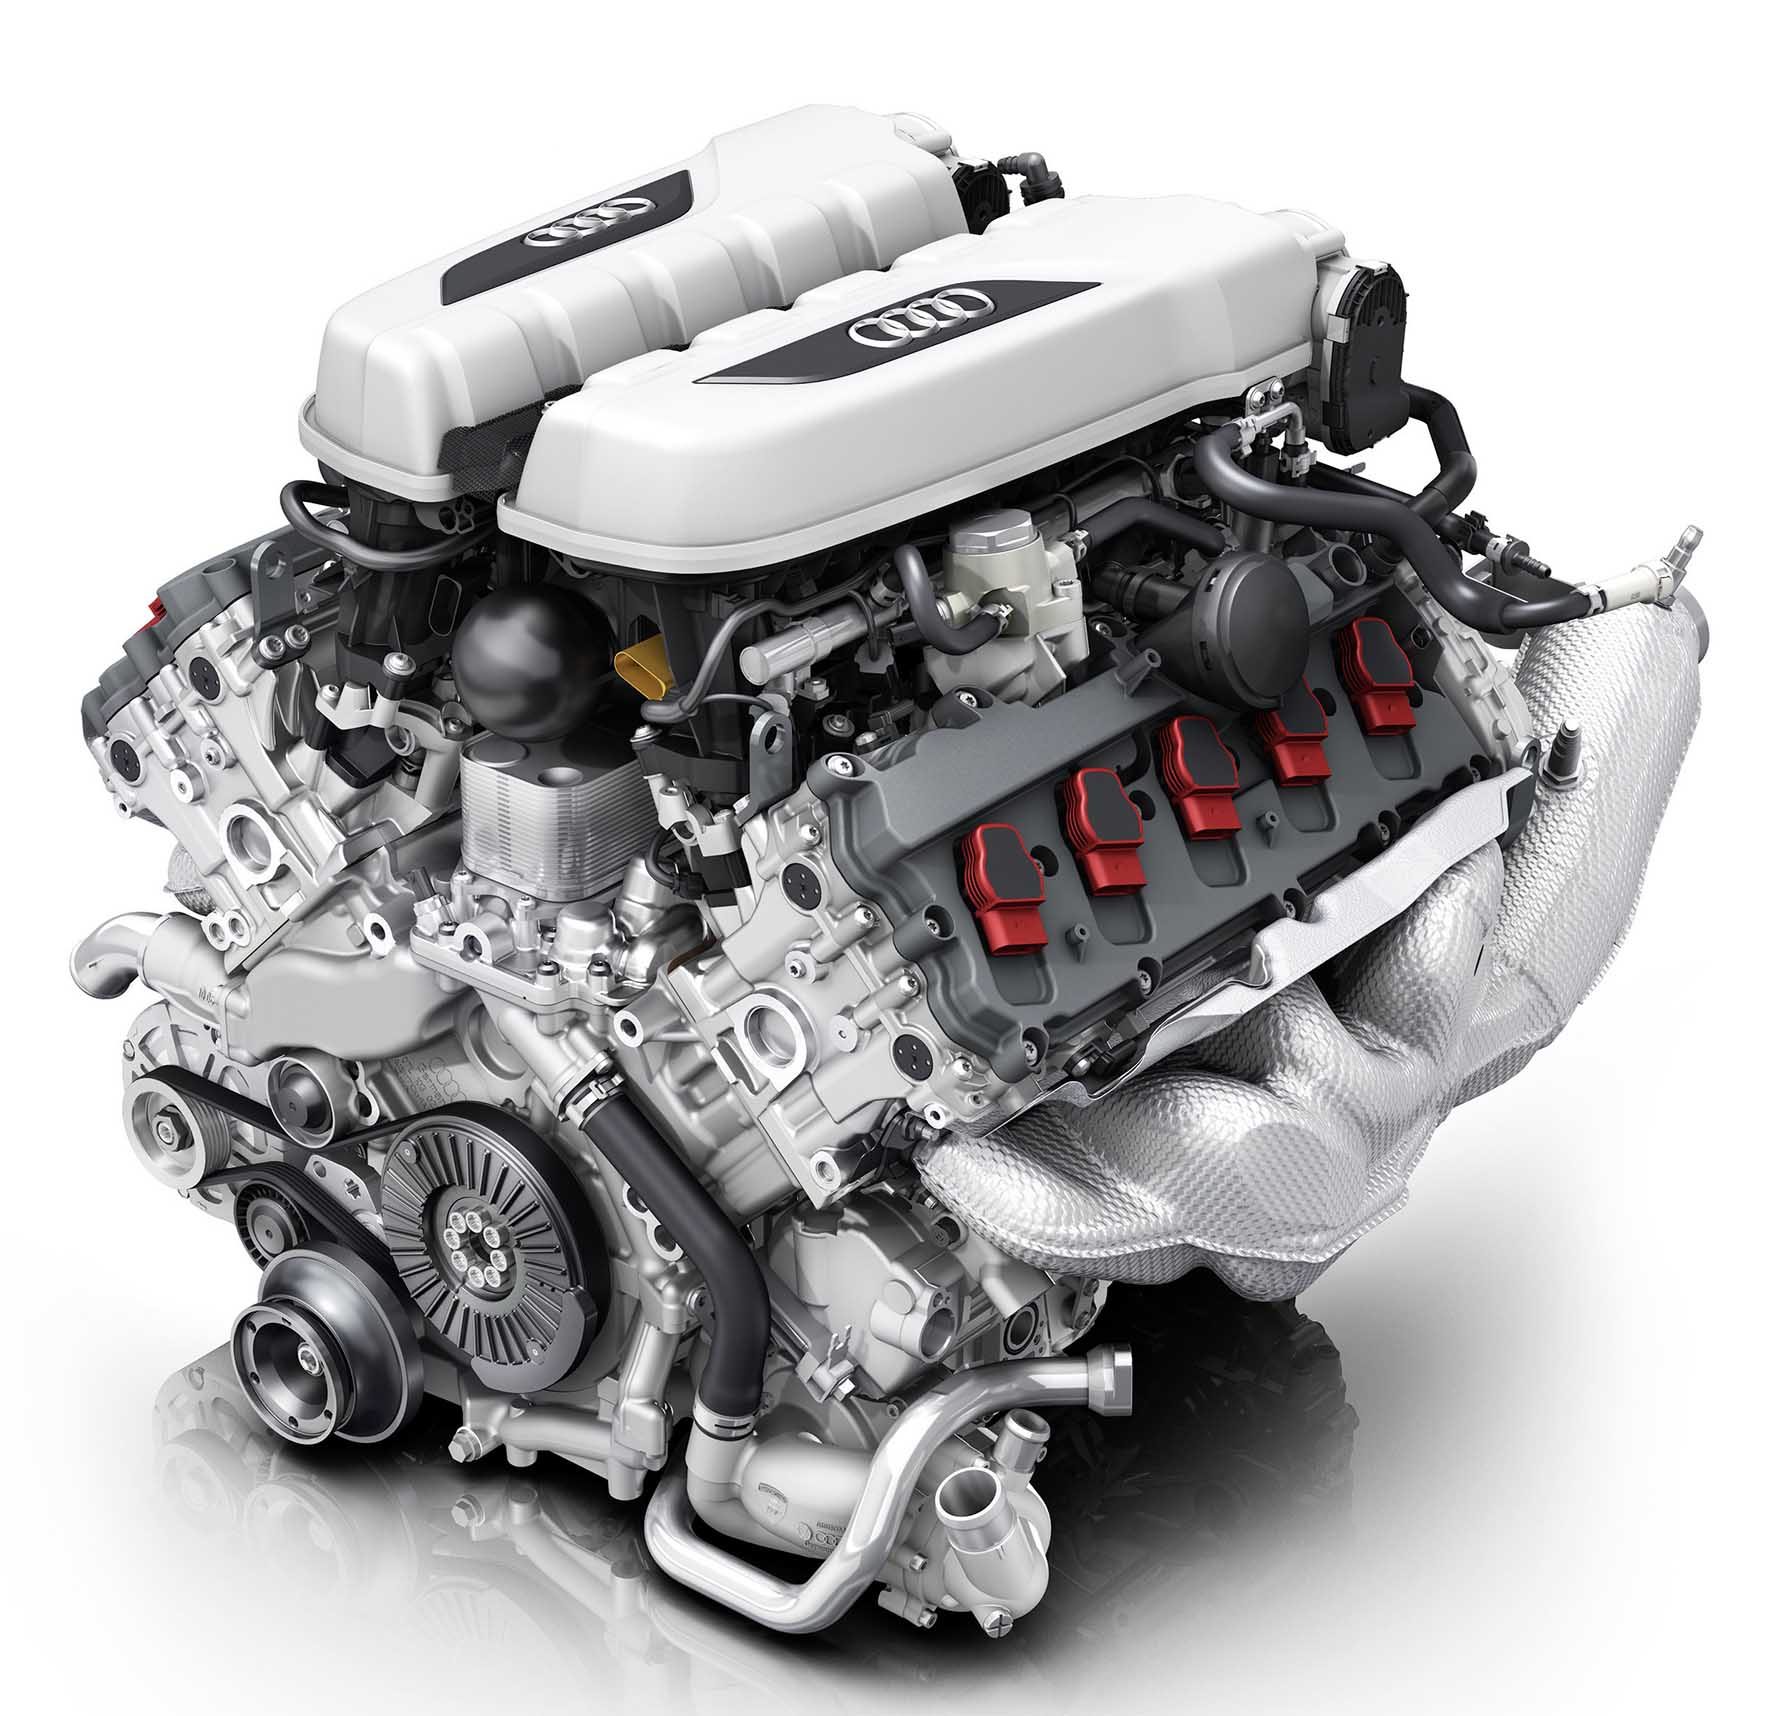 Audi new R8 2015 motore V10 5.2 litri